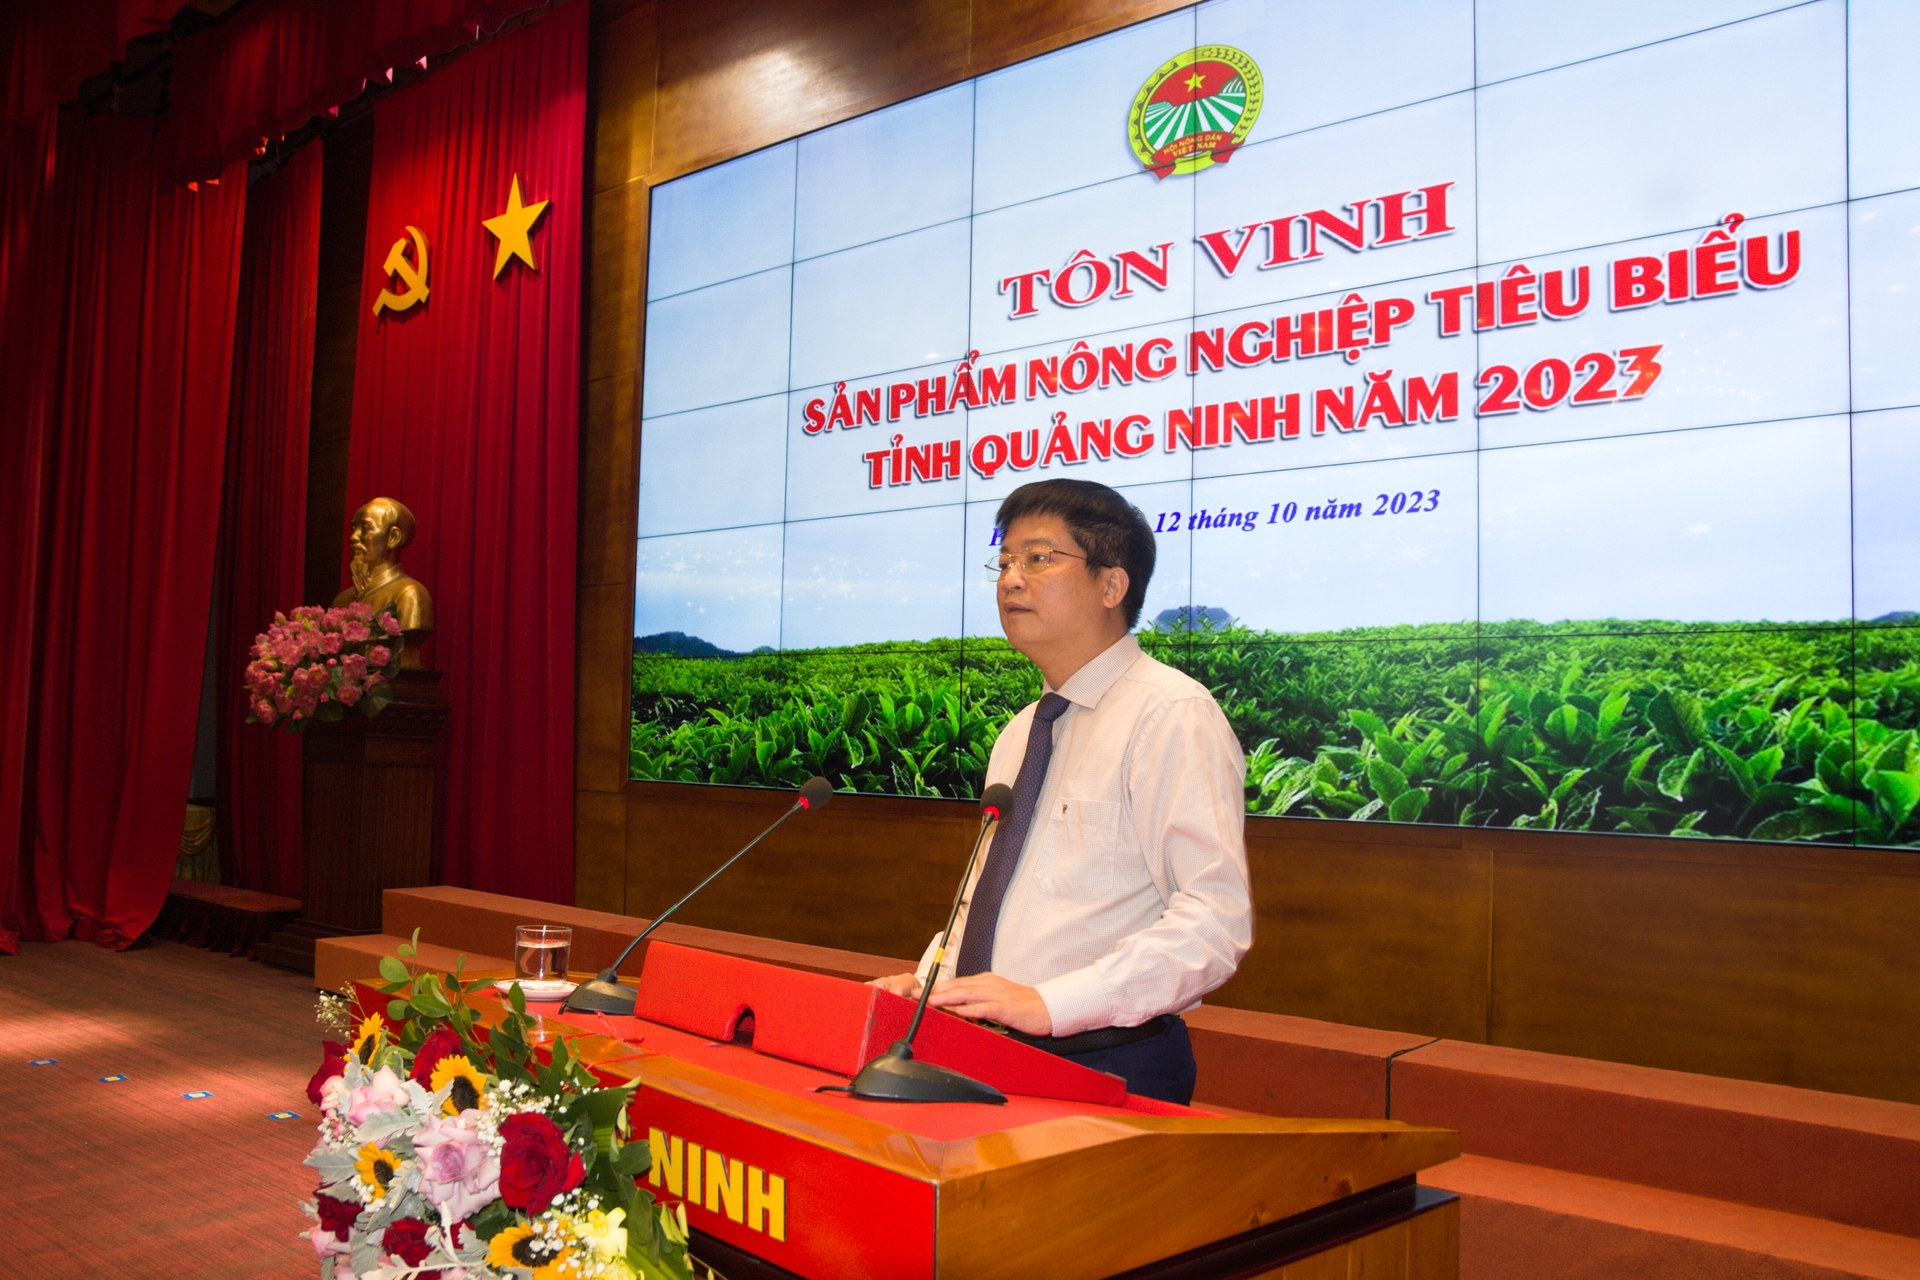 Ông Đỗ Ngọc Nam, Chủ tịch Hội Nông dân tỉnh Quảng Ninh phát biểu tại buổi tôn vinh. Ảnh: Nguyễn Thành.